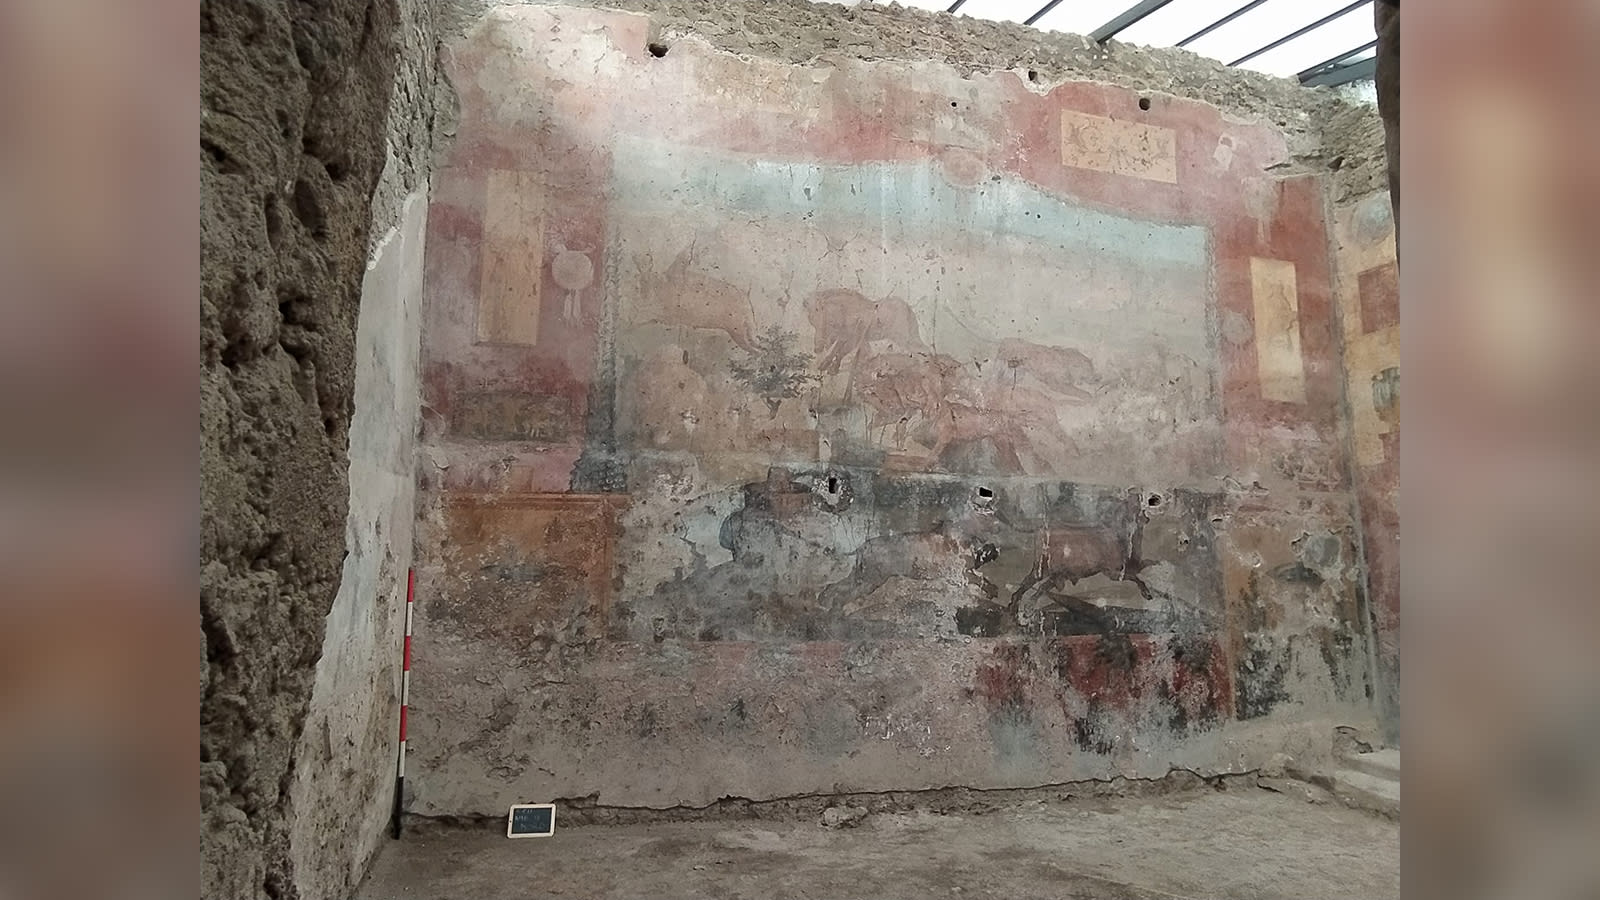  لوحات جدارية تستعيد رونقها بعد ترميمها بتقنية الليزر في إيطاليا